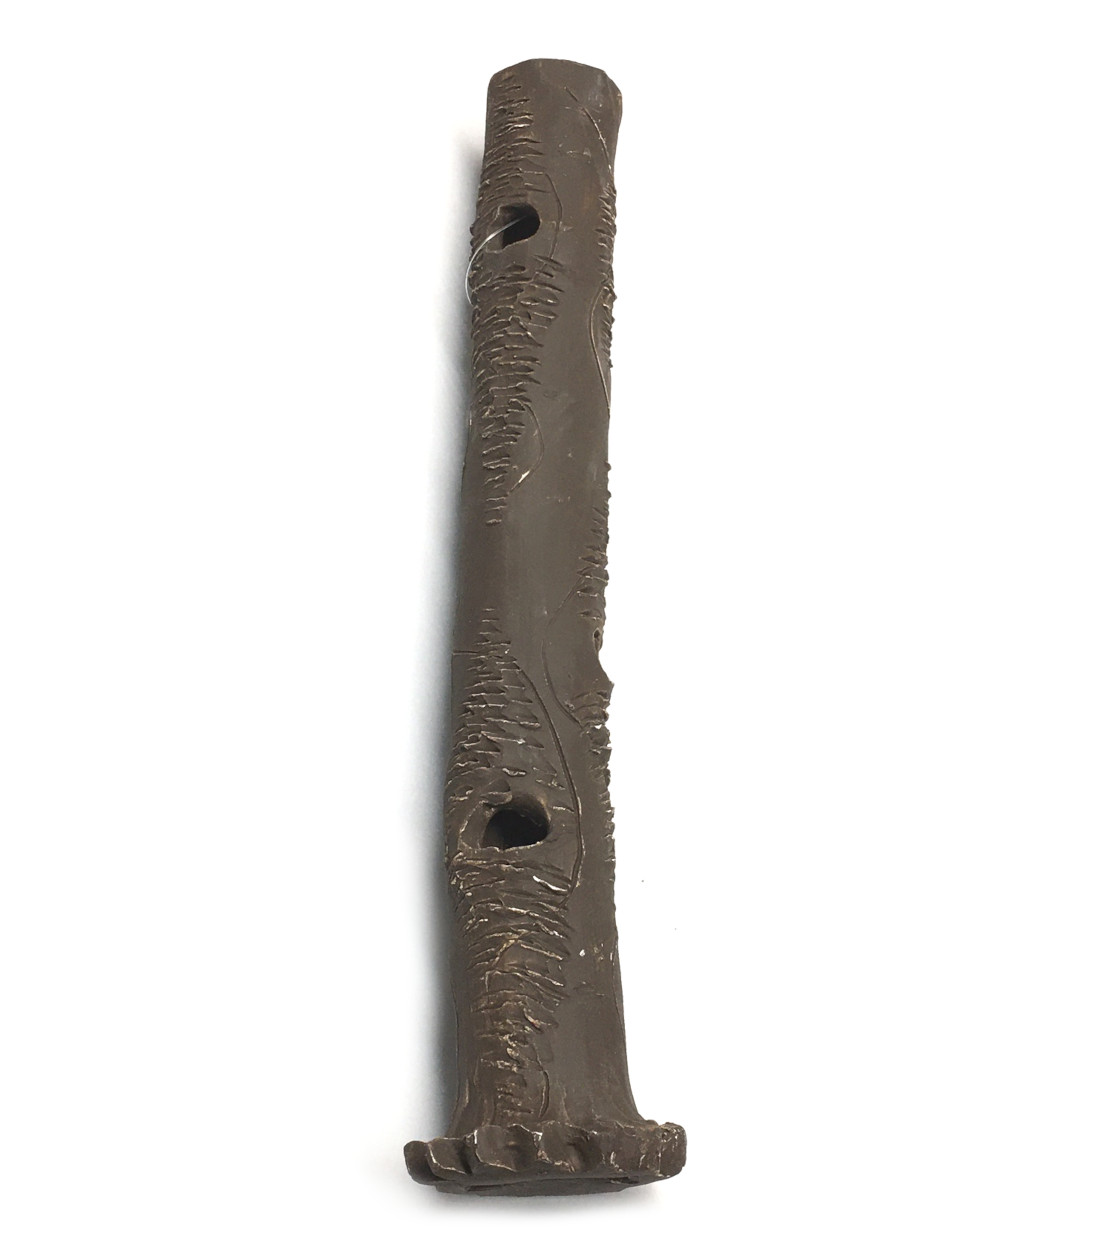 Garnelen Stamm Ton 35x4,5 cm -dunkelbraun- im Detail